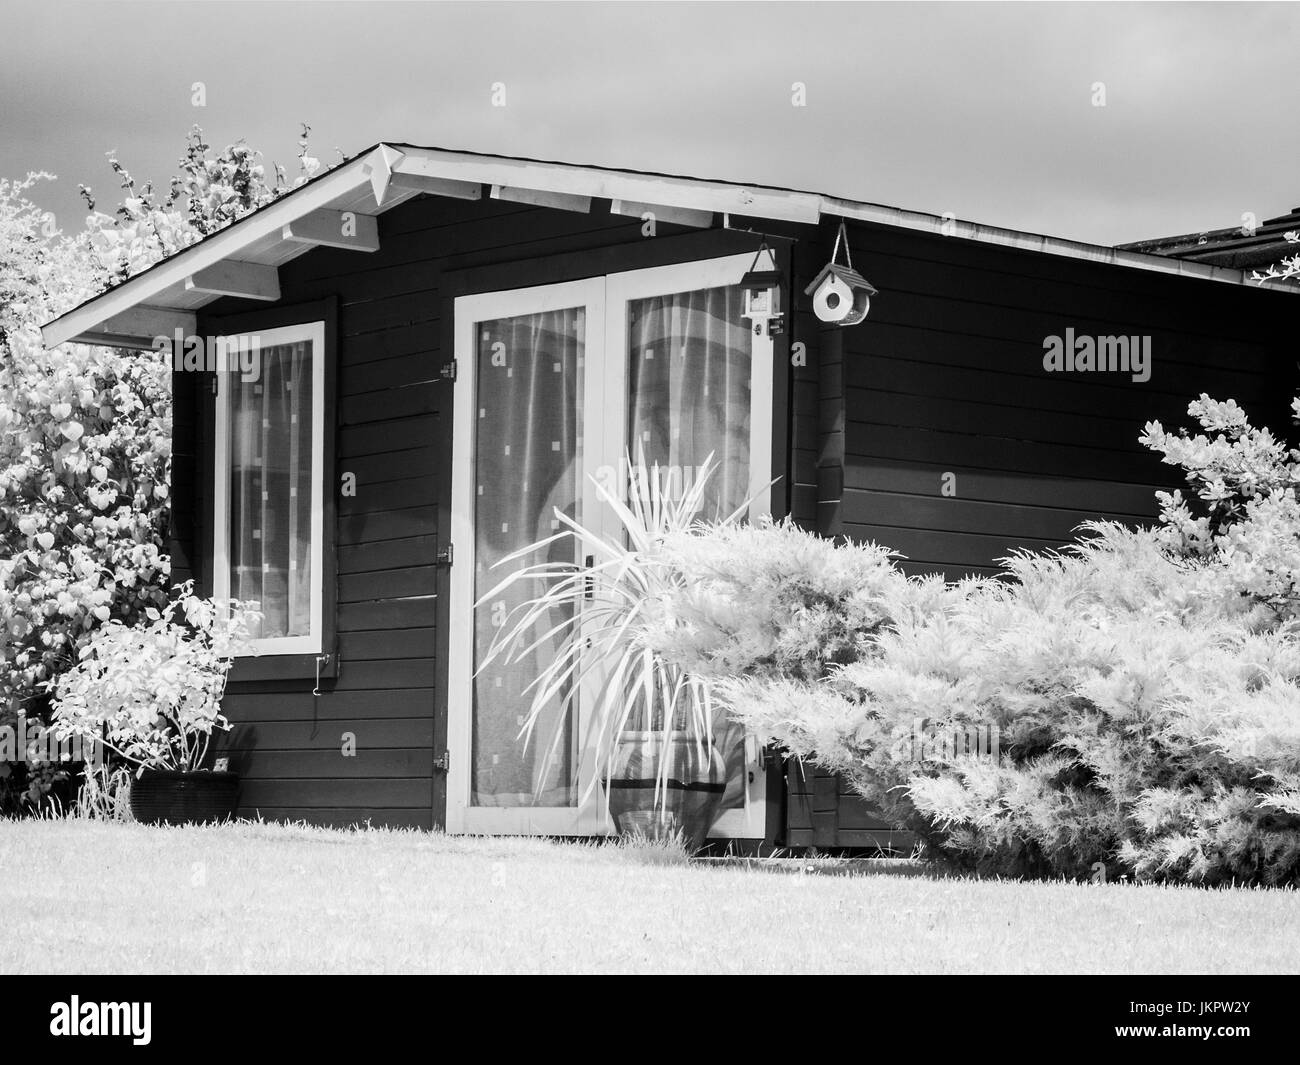 Un abri de jardin en bois de style chalet prises sur une caméra infrarouge converti. Banque D'Images